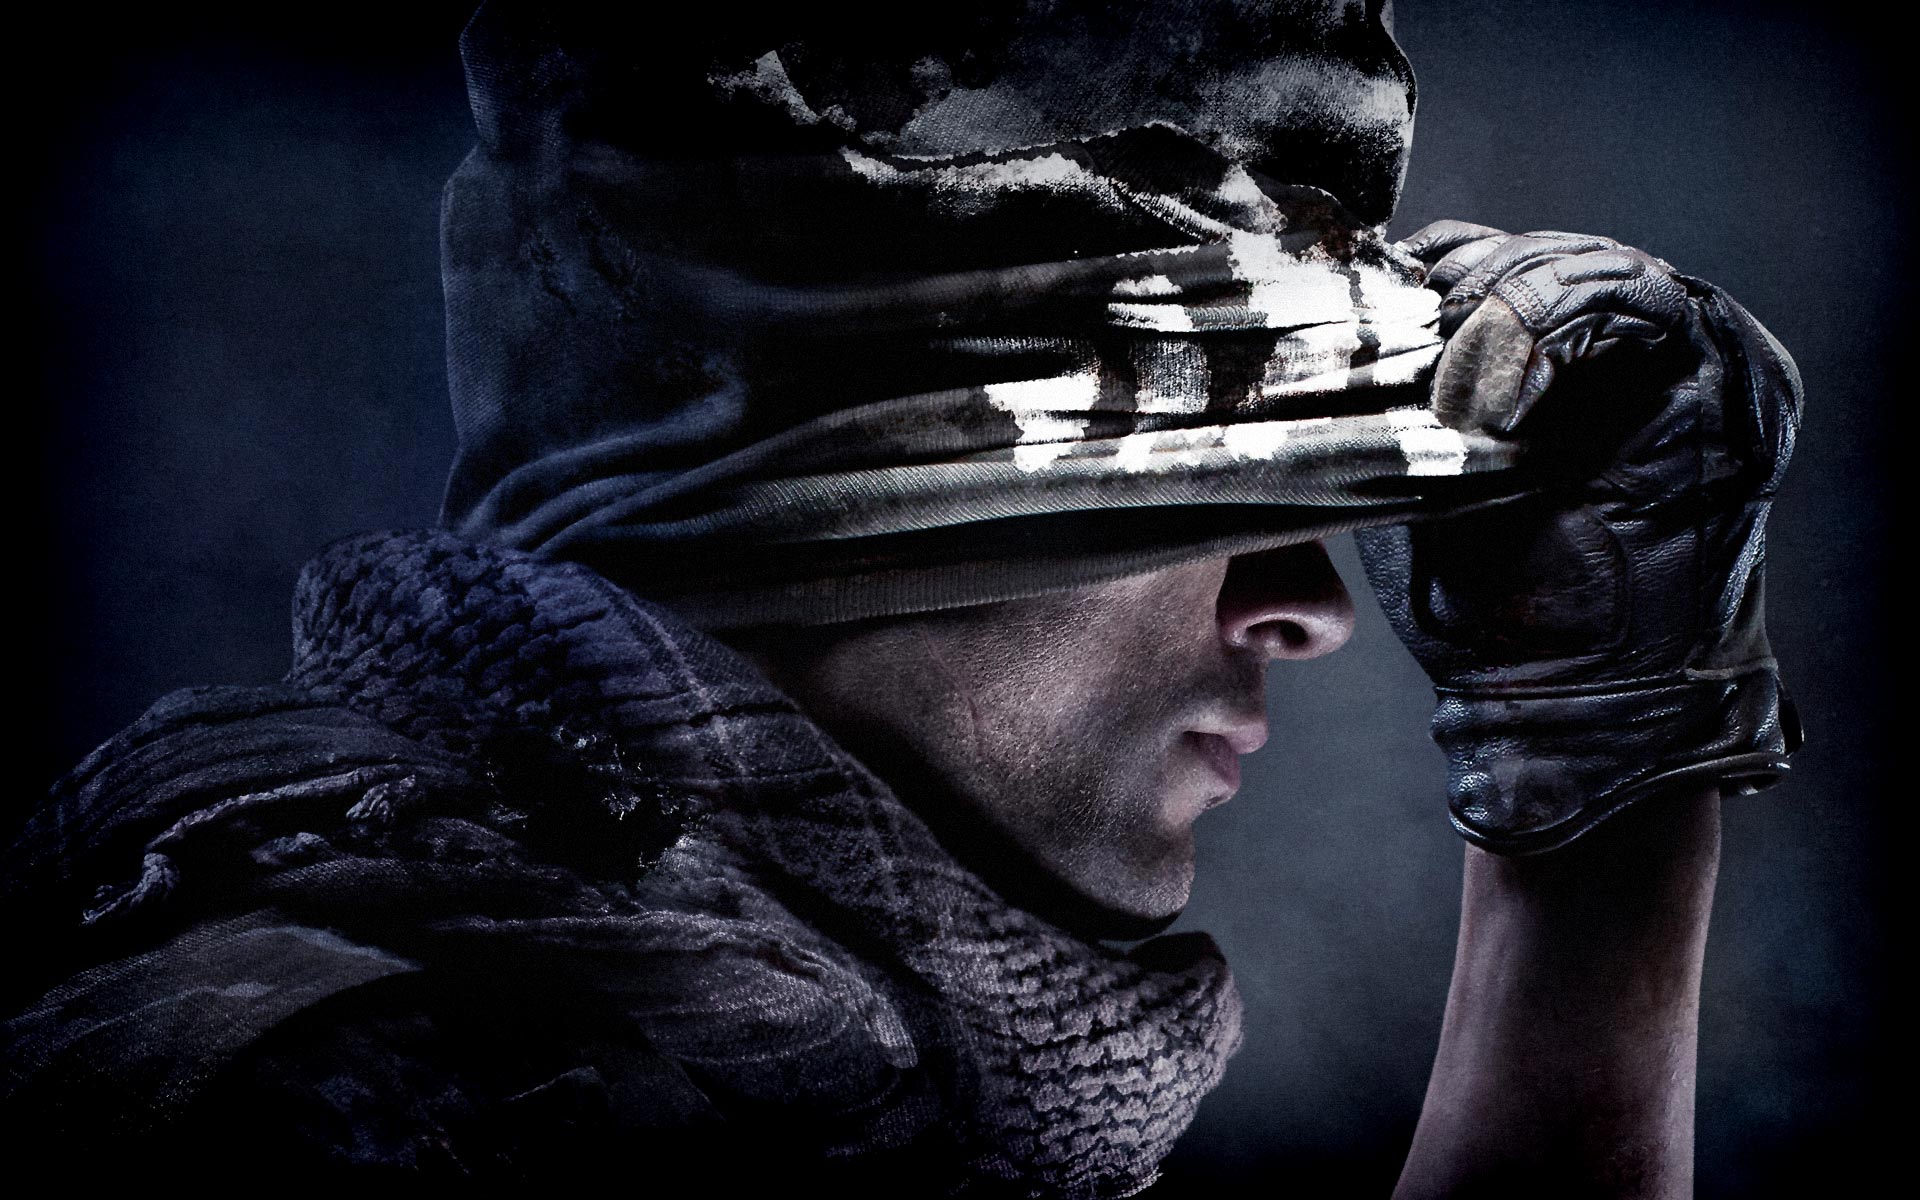 Immagine pubblicata in relazione al seguente contenuto: Il prossimo game Call of Duty potrebbe essere ambientato nello spazio | Nome immagine: news24036_Call-of-Duty-Ghosts_1.jpg